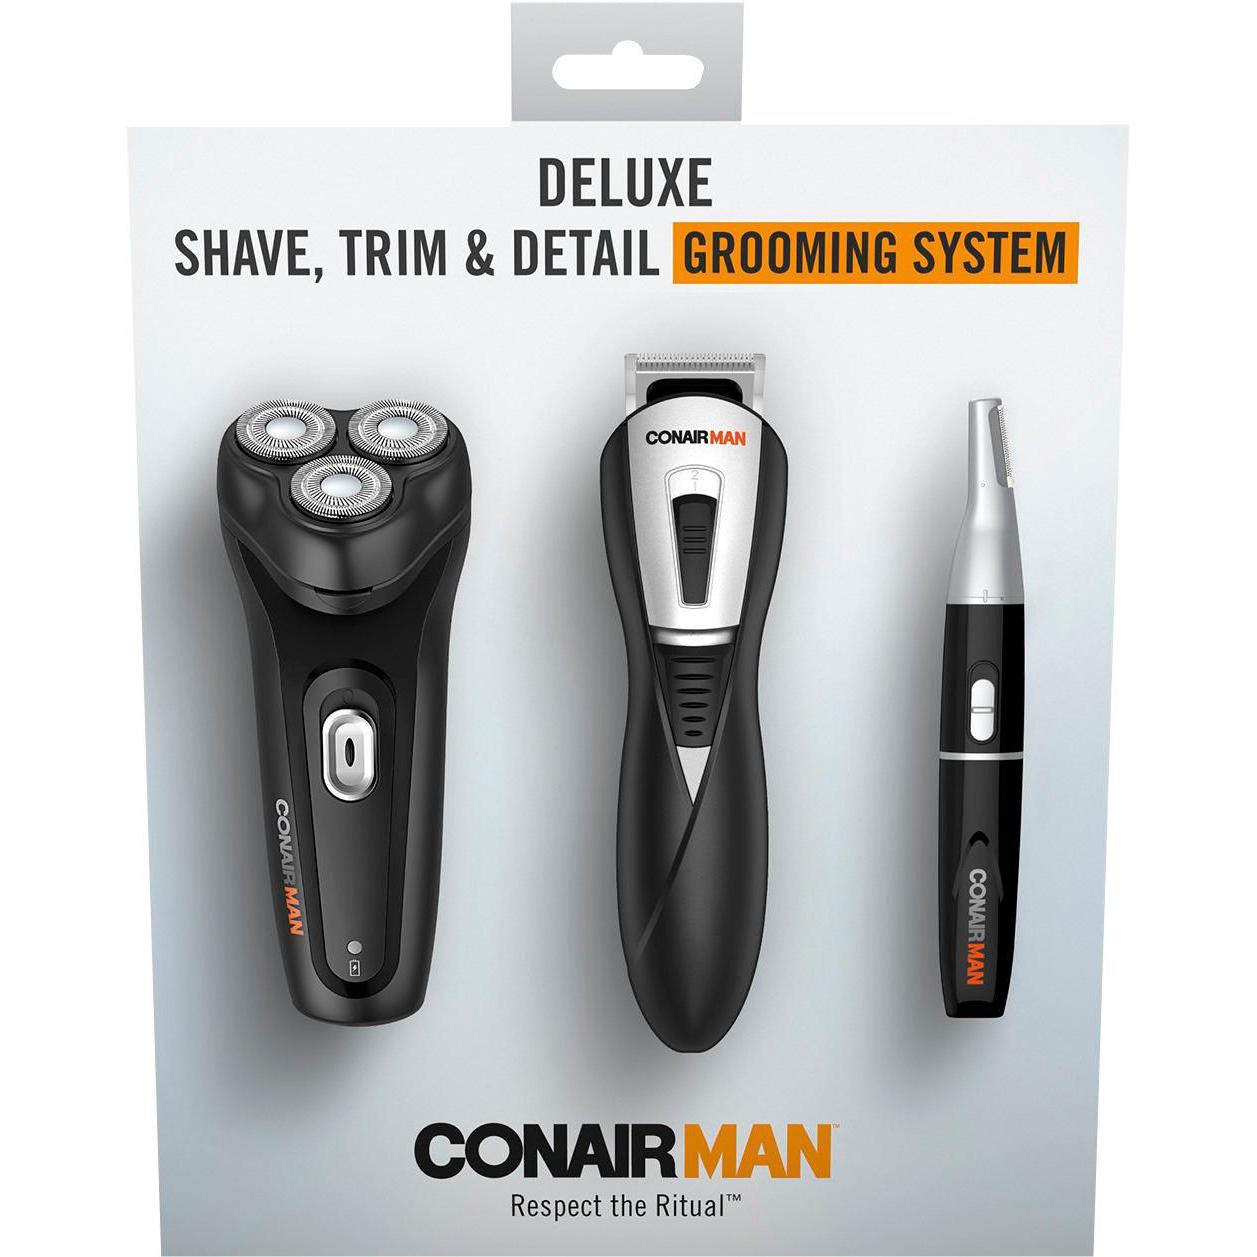 Conair GK20 ConairMan Deluxe Electric Shaver for $29.99